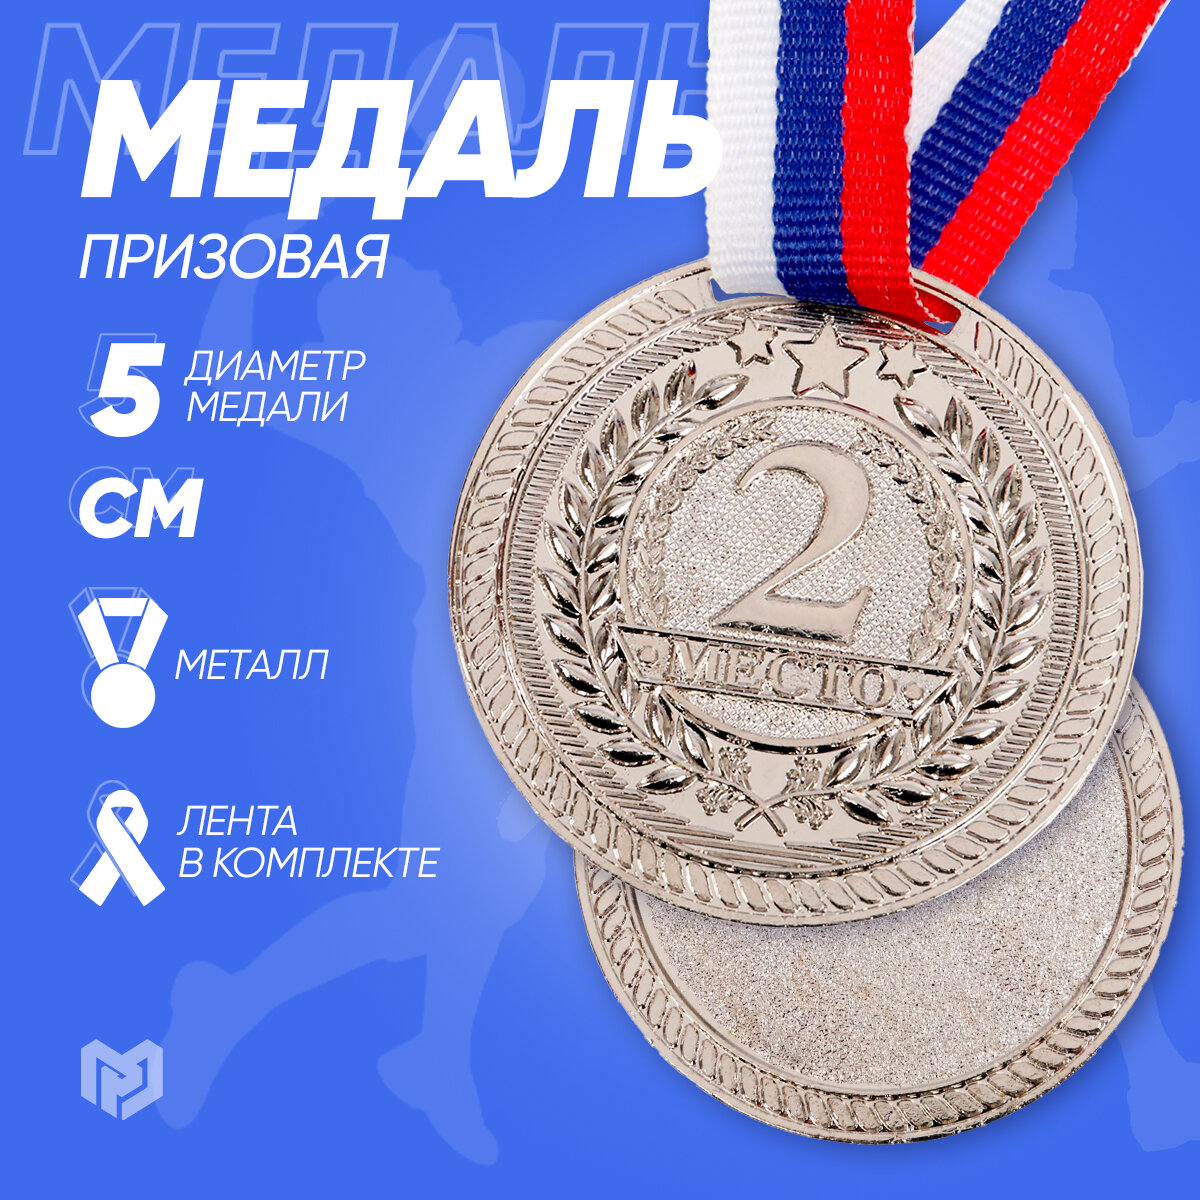 Медаль "Второе место" - сувенир для всех возрастов